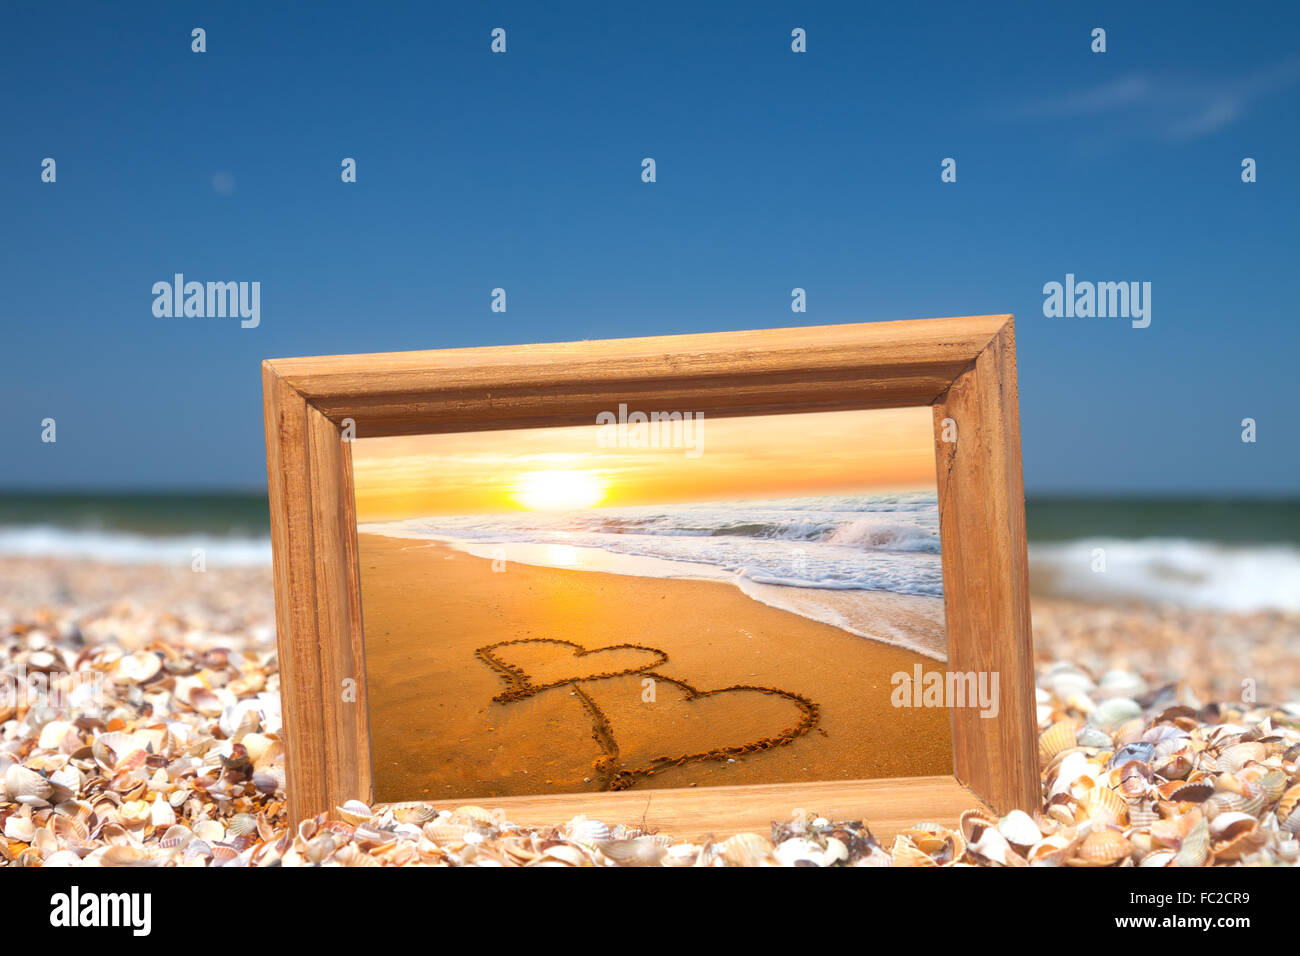 Il concetto di amore - due cuori sulla sabbia Foto Stock